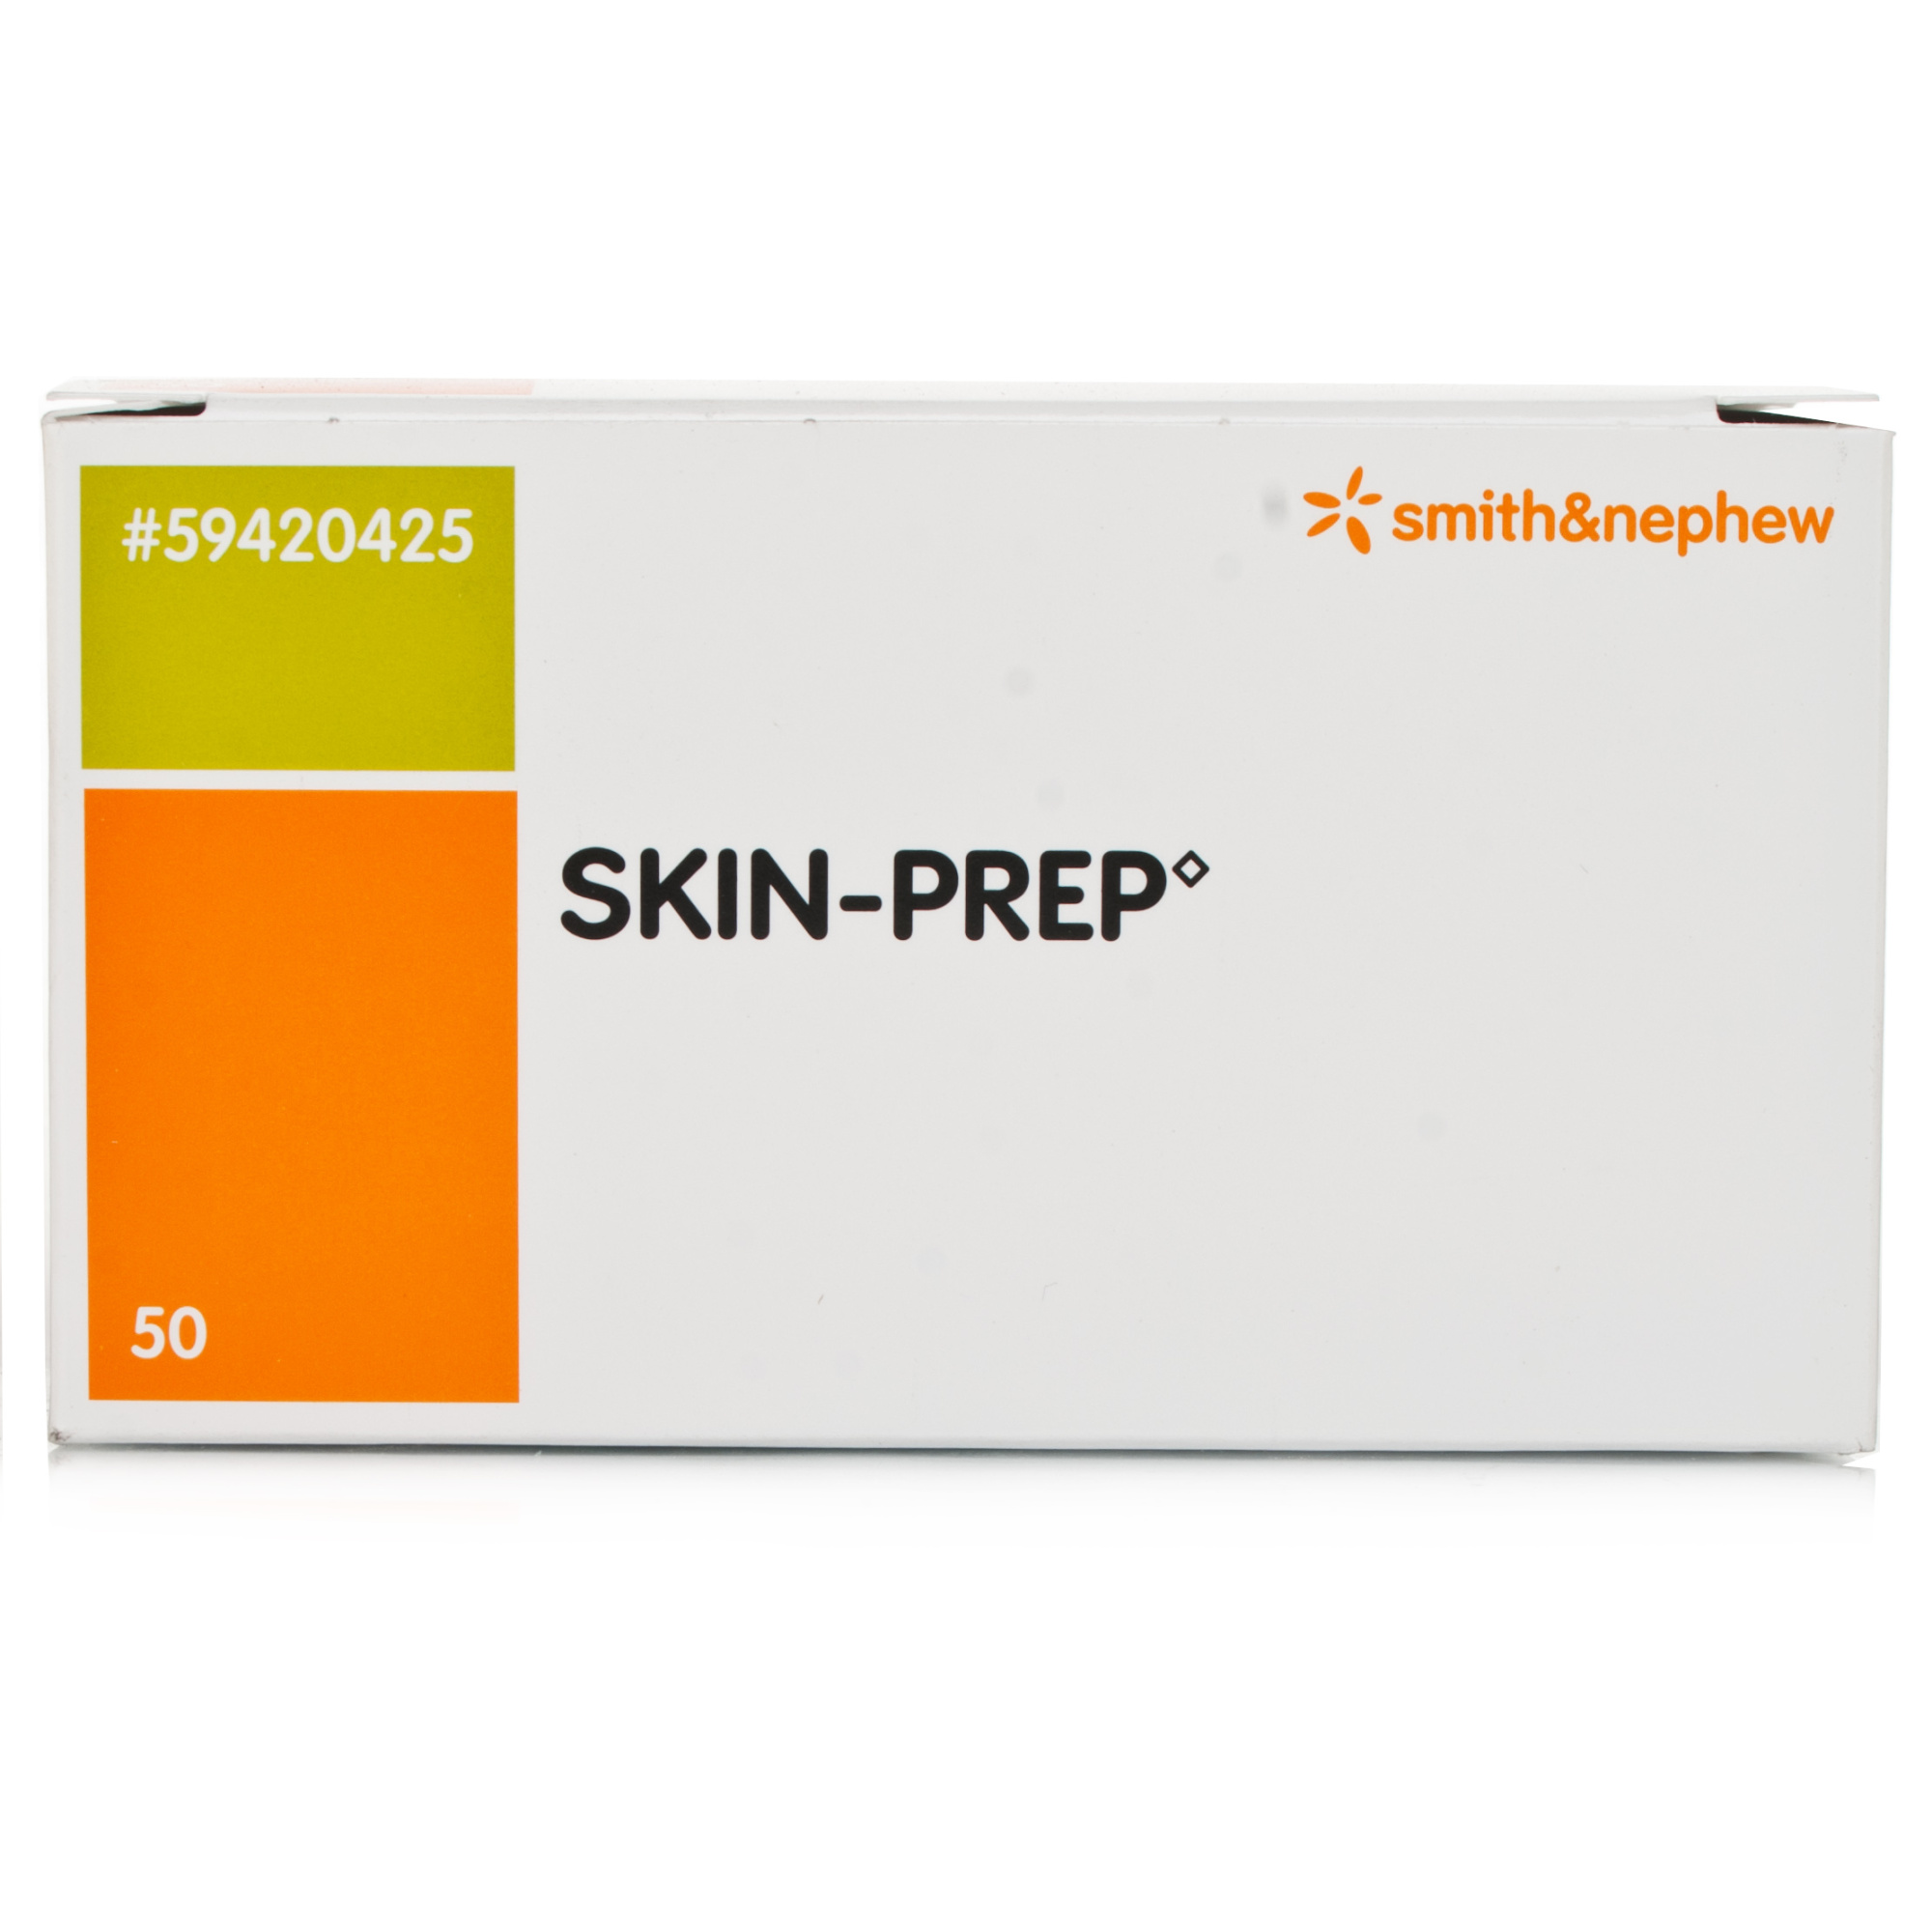 Skin-Prep 50 - 50 dressings